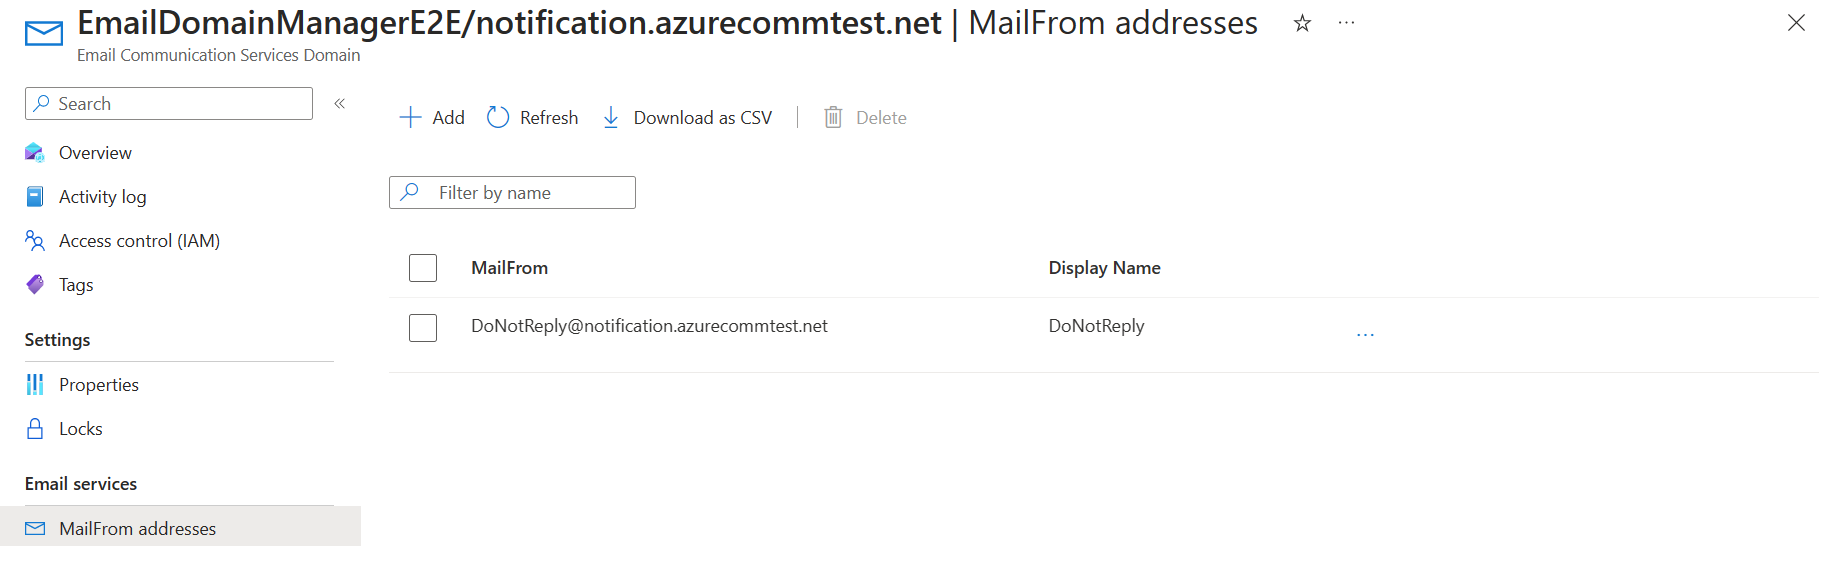 Capture d’écran qui explique comment répertorier les adresses MailFrom.